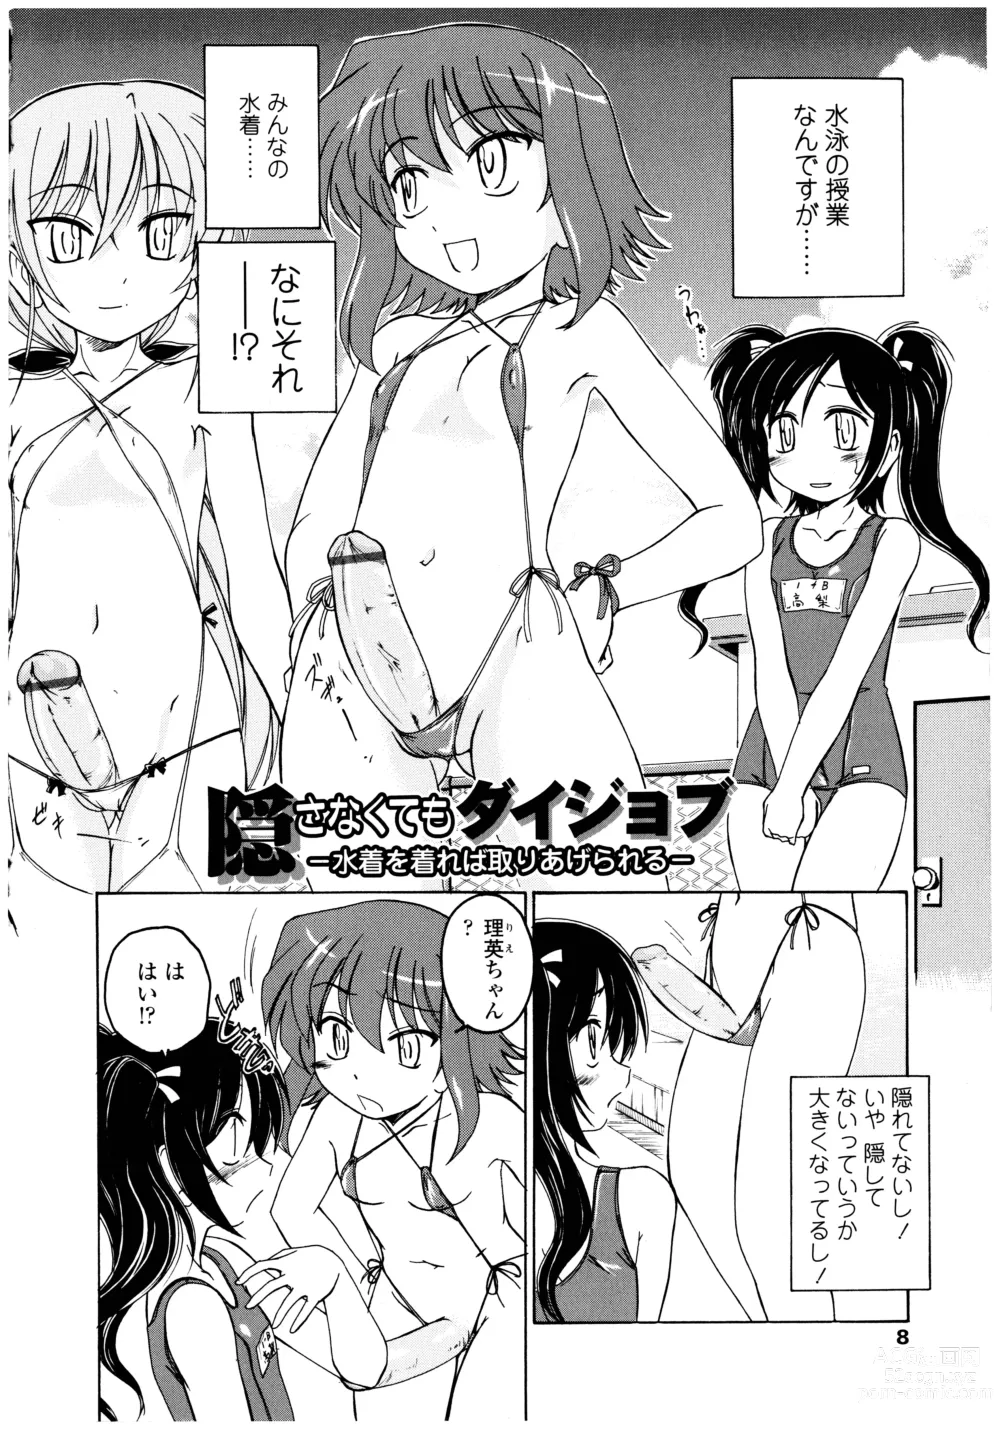 Page 8 of manga Futanari Yesterday